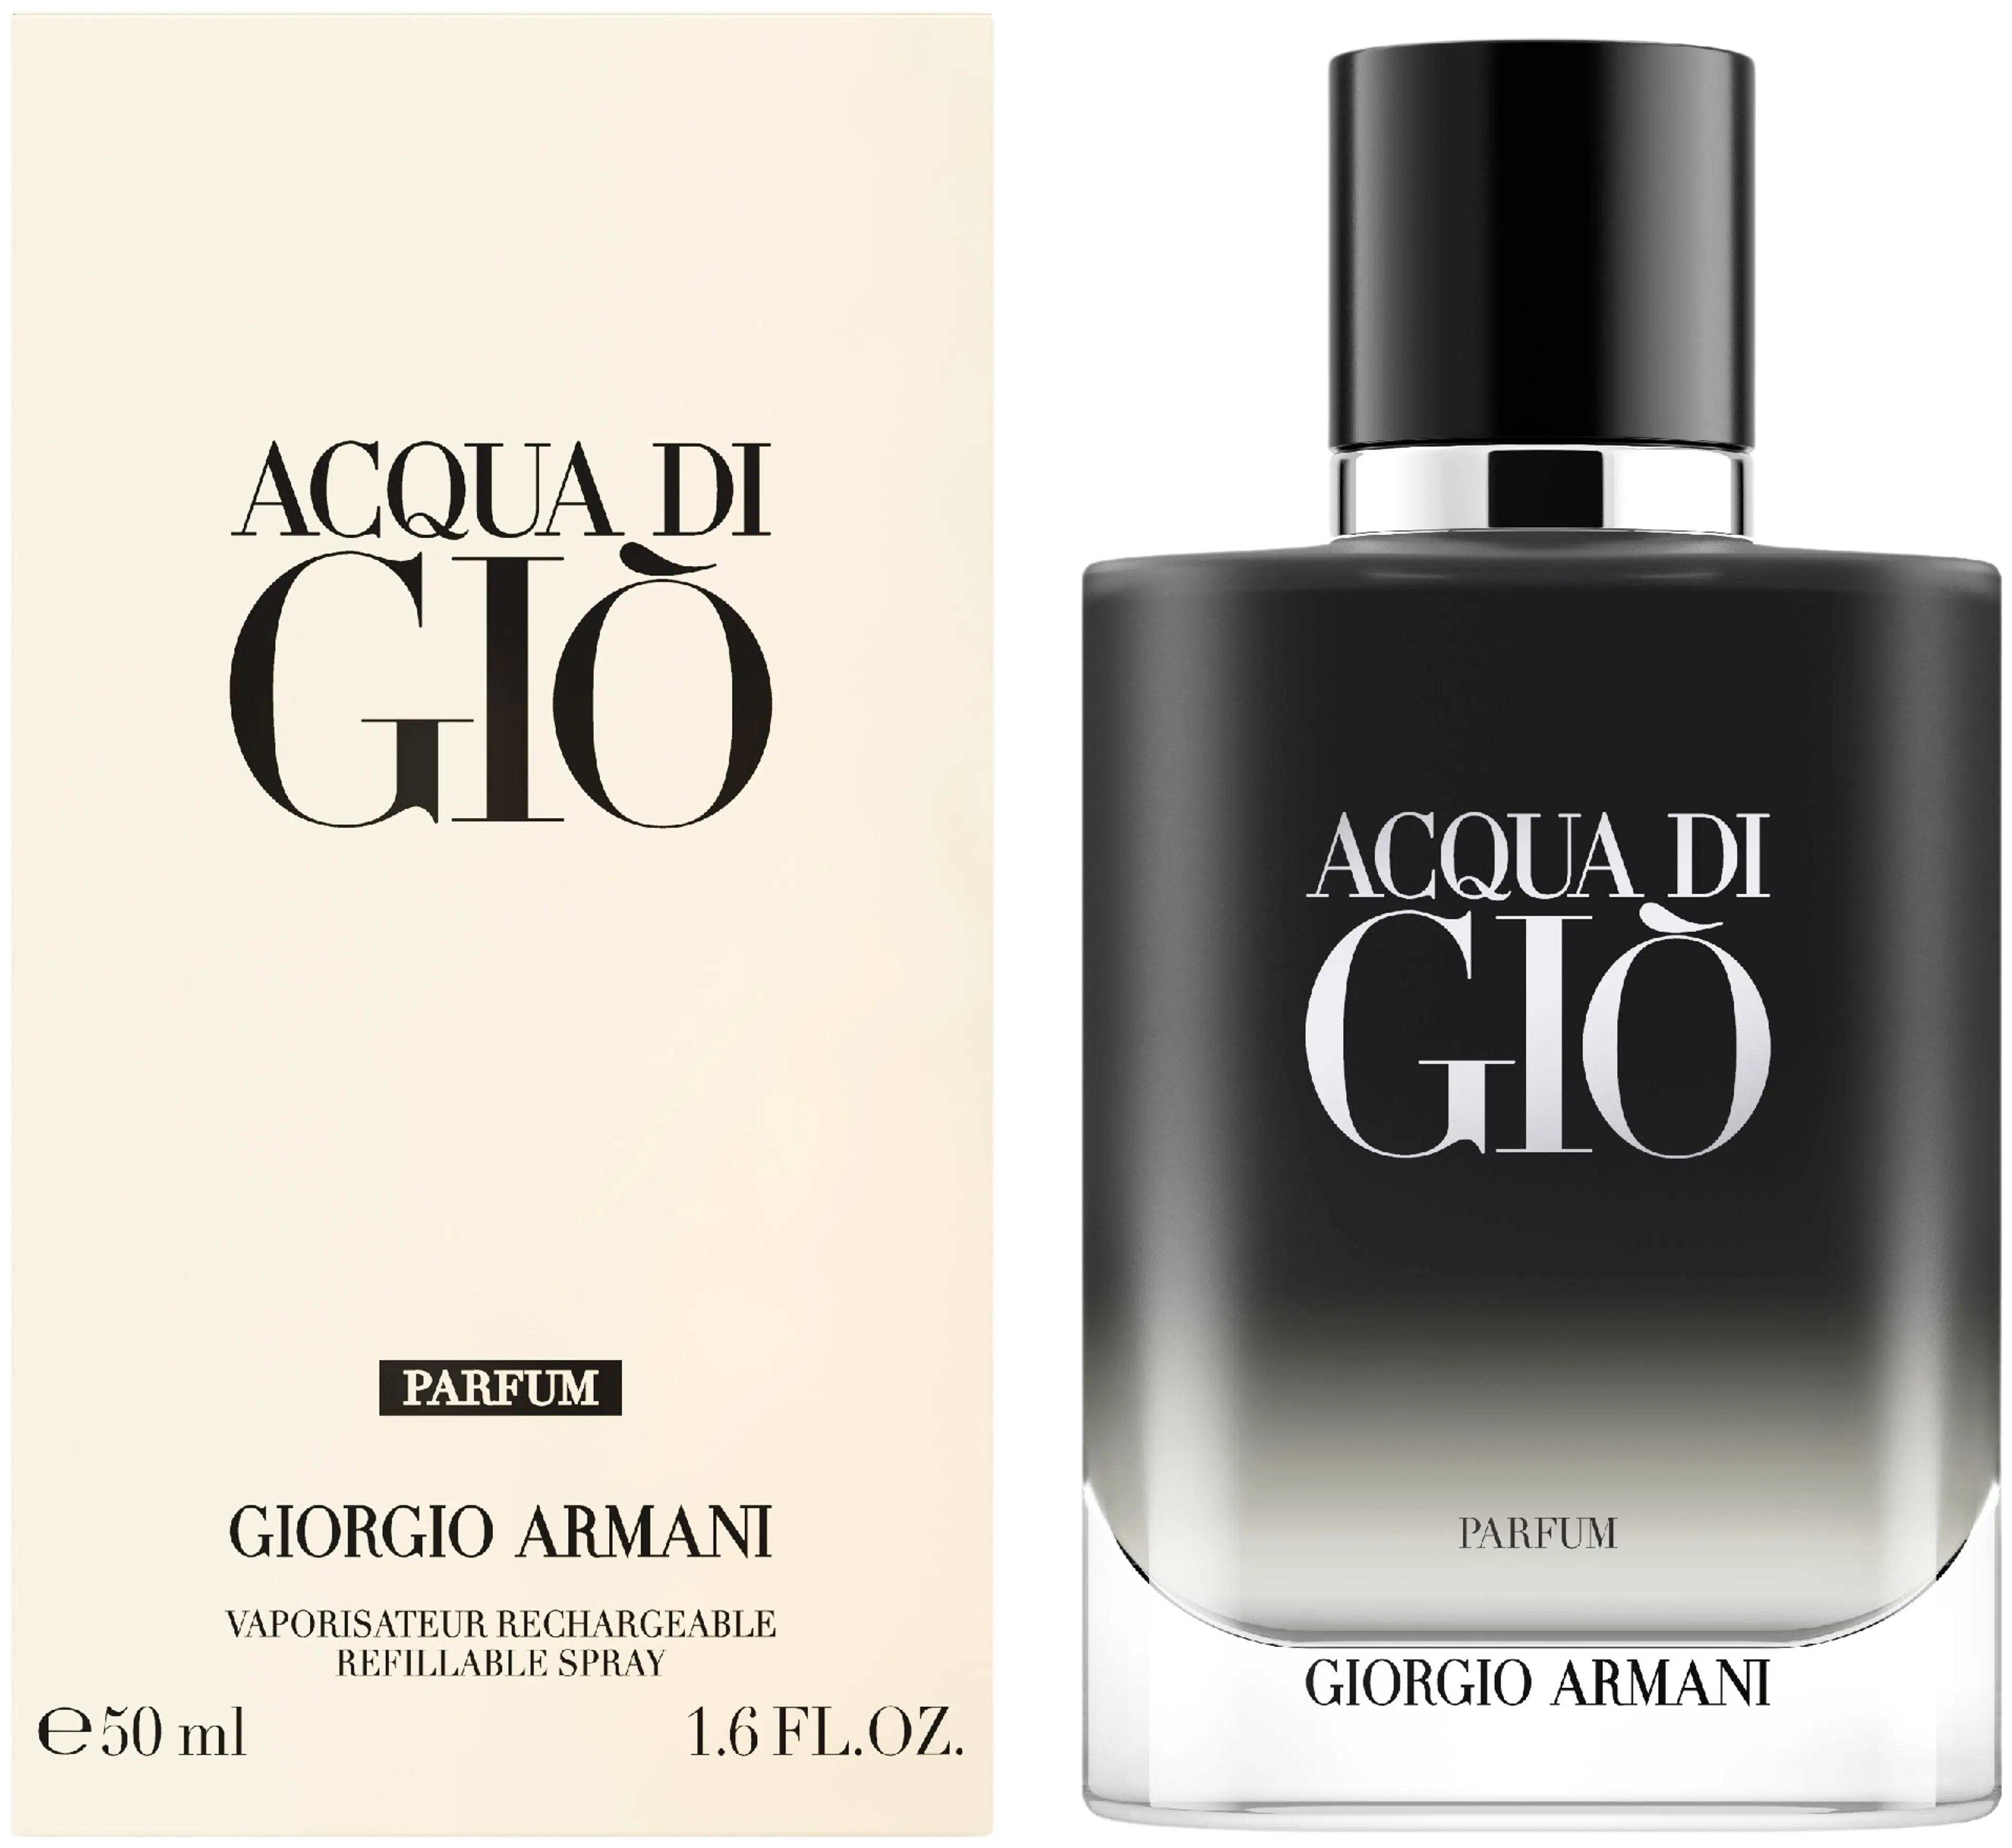 Giorgio Armani Acqua di Gio Parfum tuoksu 50 ml